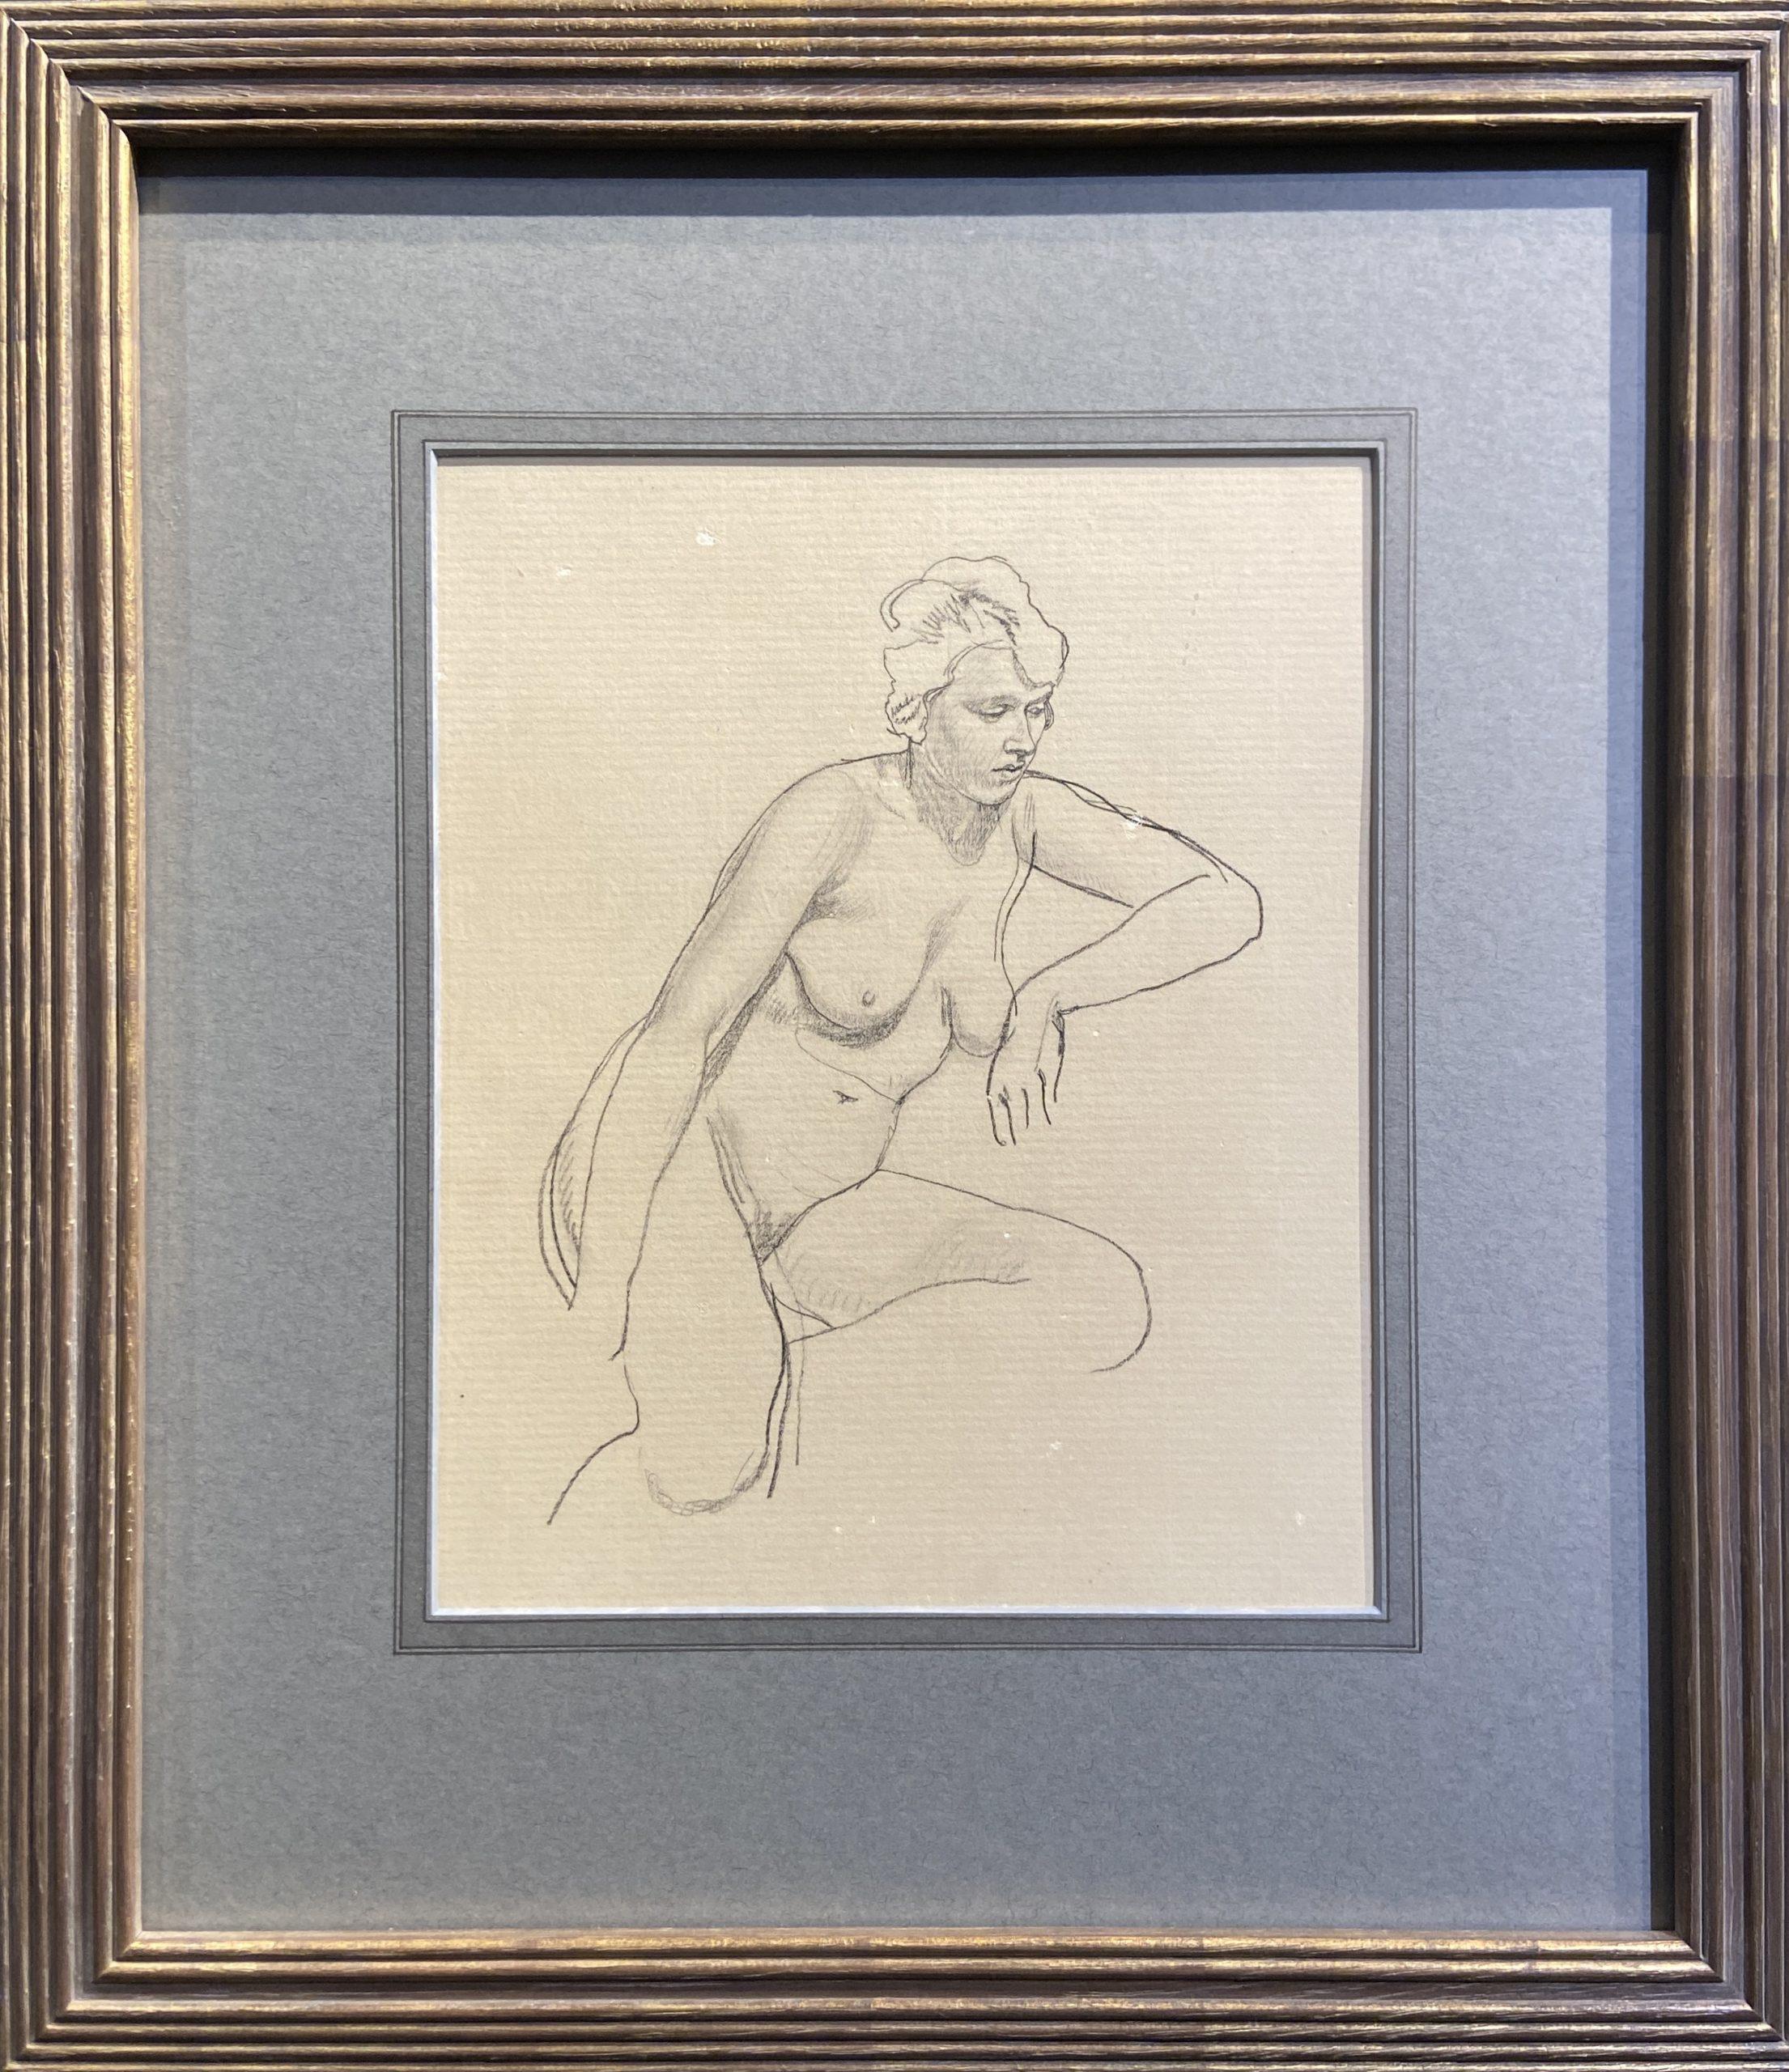 William Dring Nude – Aktstudie, Graphit auf Papier, britisches Kunstwerk des 20. Jahrhunderts